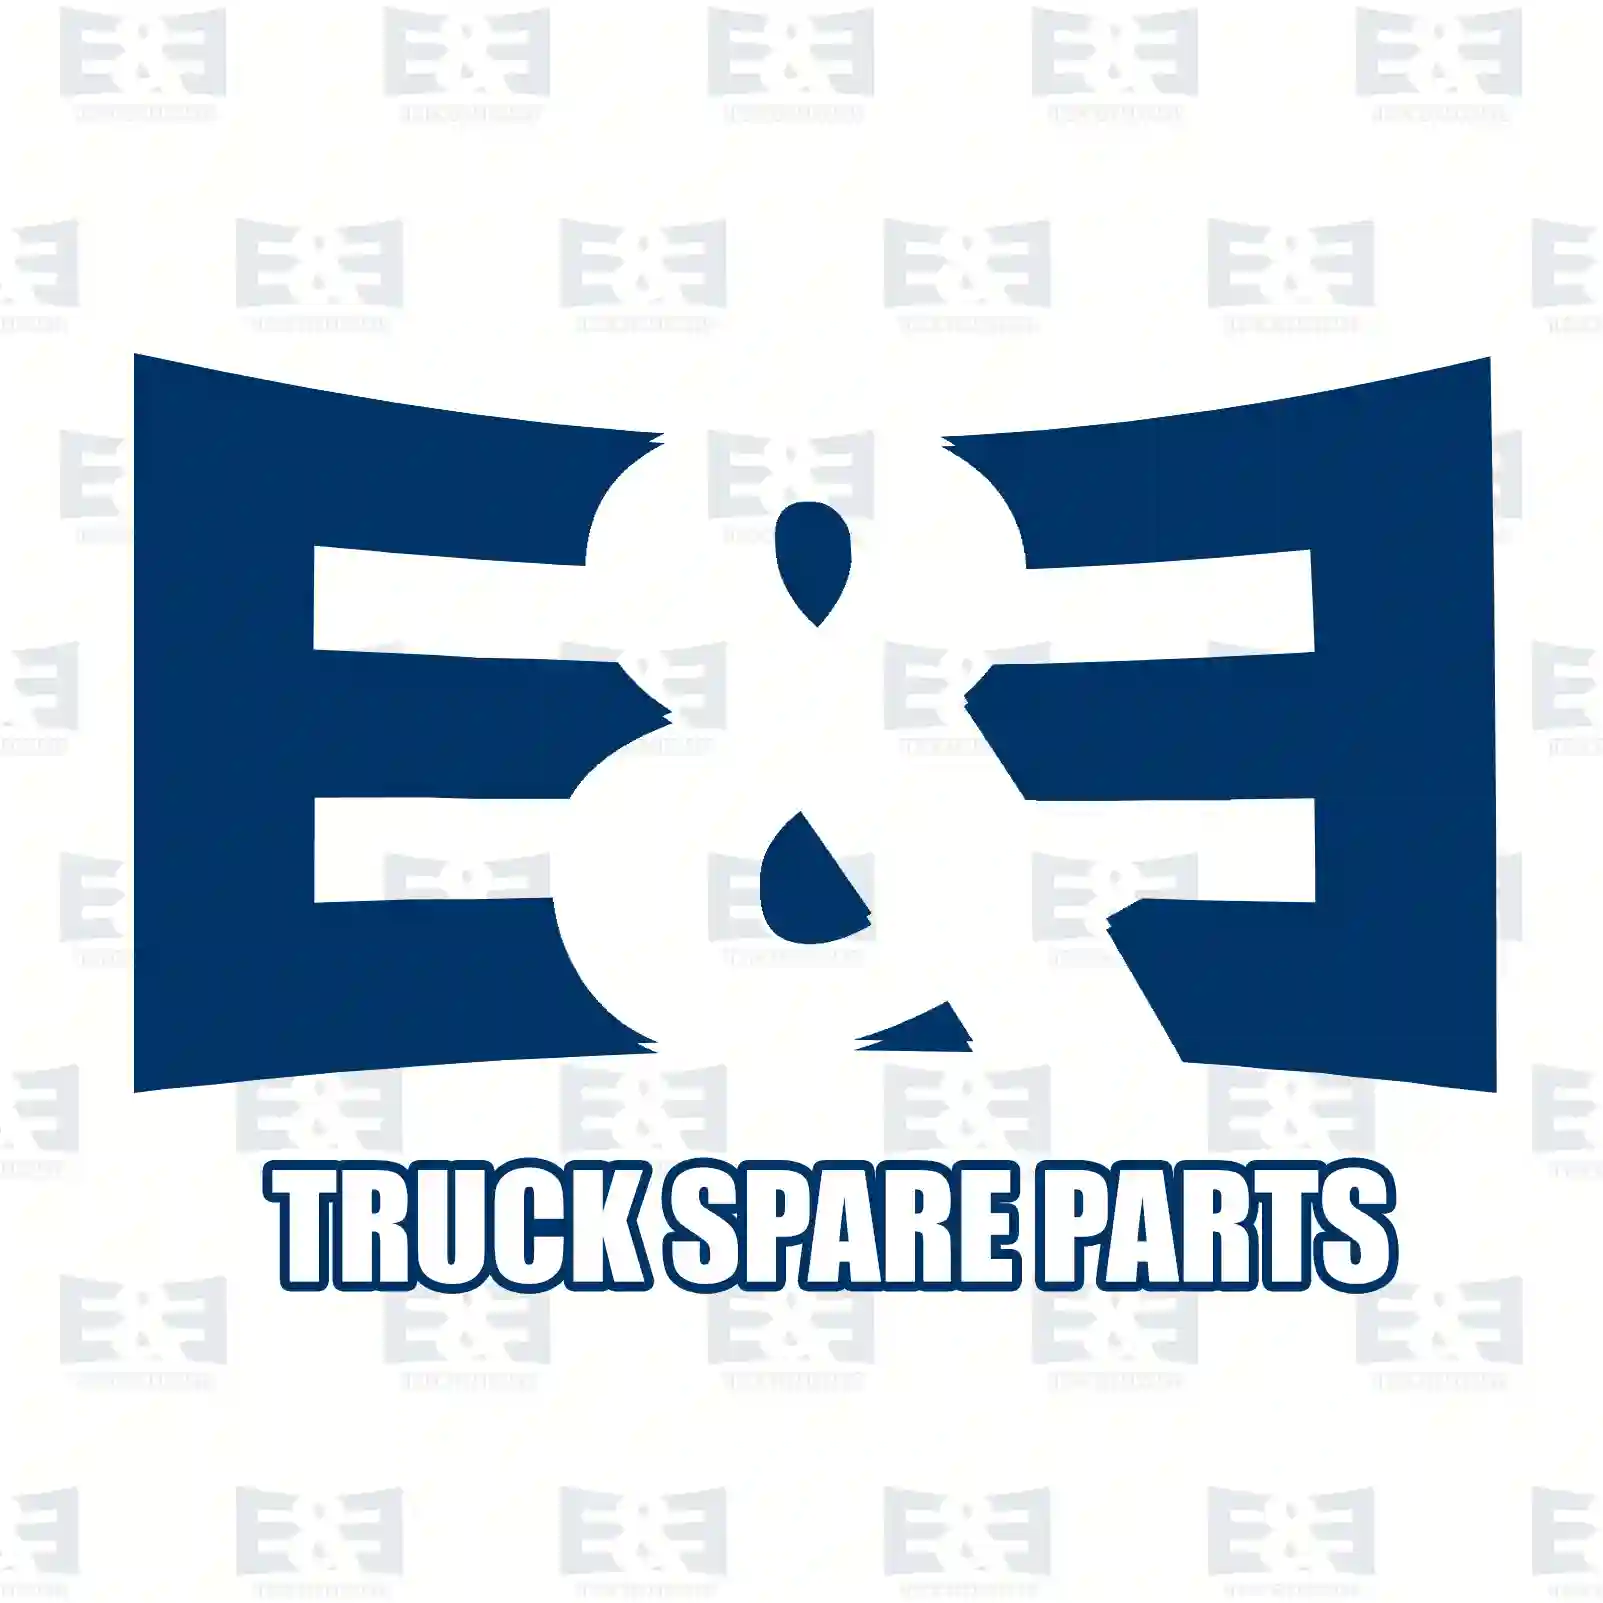 Gear shift knob, 2E2279245, 382422 ||  2E2279245 E&E Truck Spare Parts | Truck Spare Parts, Auotomotive Spare Parts Gear shift knob, 2E2279245, 382422 ||  2E2279245 E&E Truck Spare Parts | Truck Spare Parts, Auotomotive Spare Parts